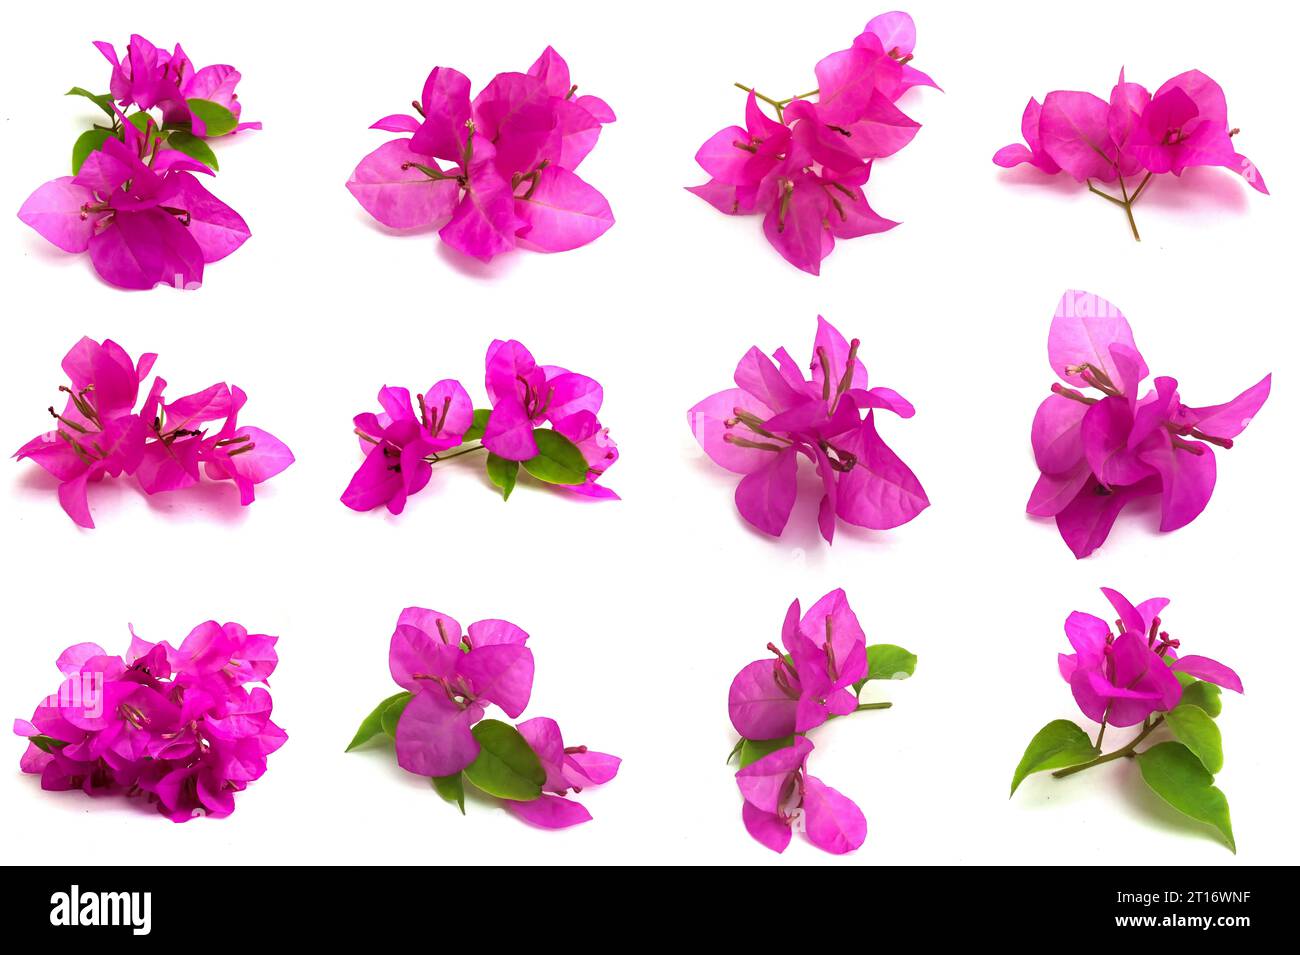 Set mit kleinen rosa Bougainvillea Blumen auf weißem Hintergrund. Fotos aus verschiedenen Richtungen. Dieses Asset eignet sich sehr gut für die Gestaltung der Natur Stockfoto